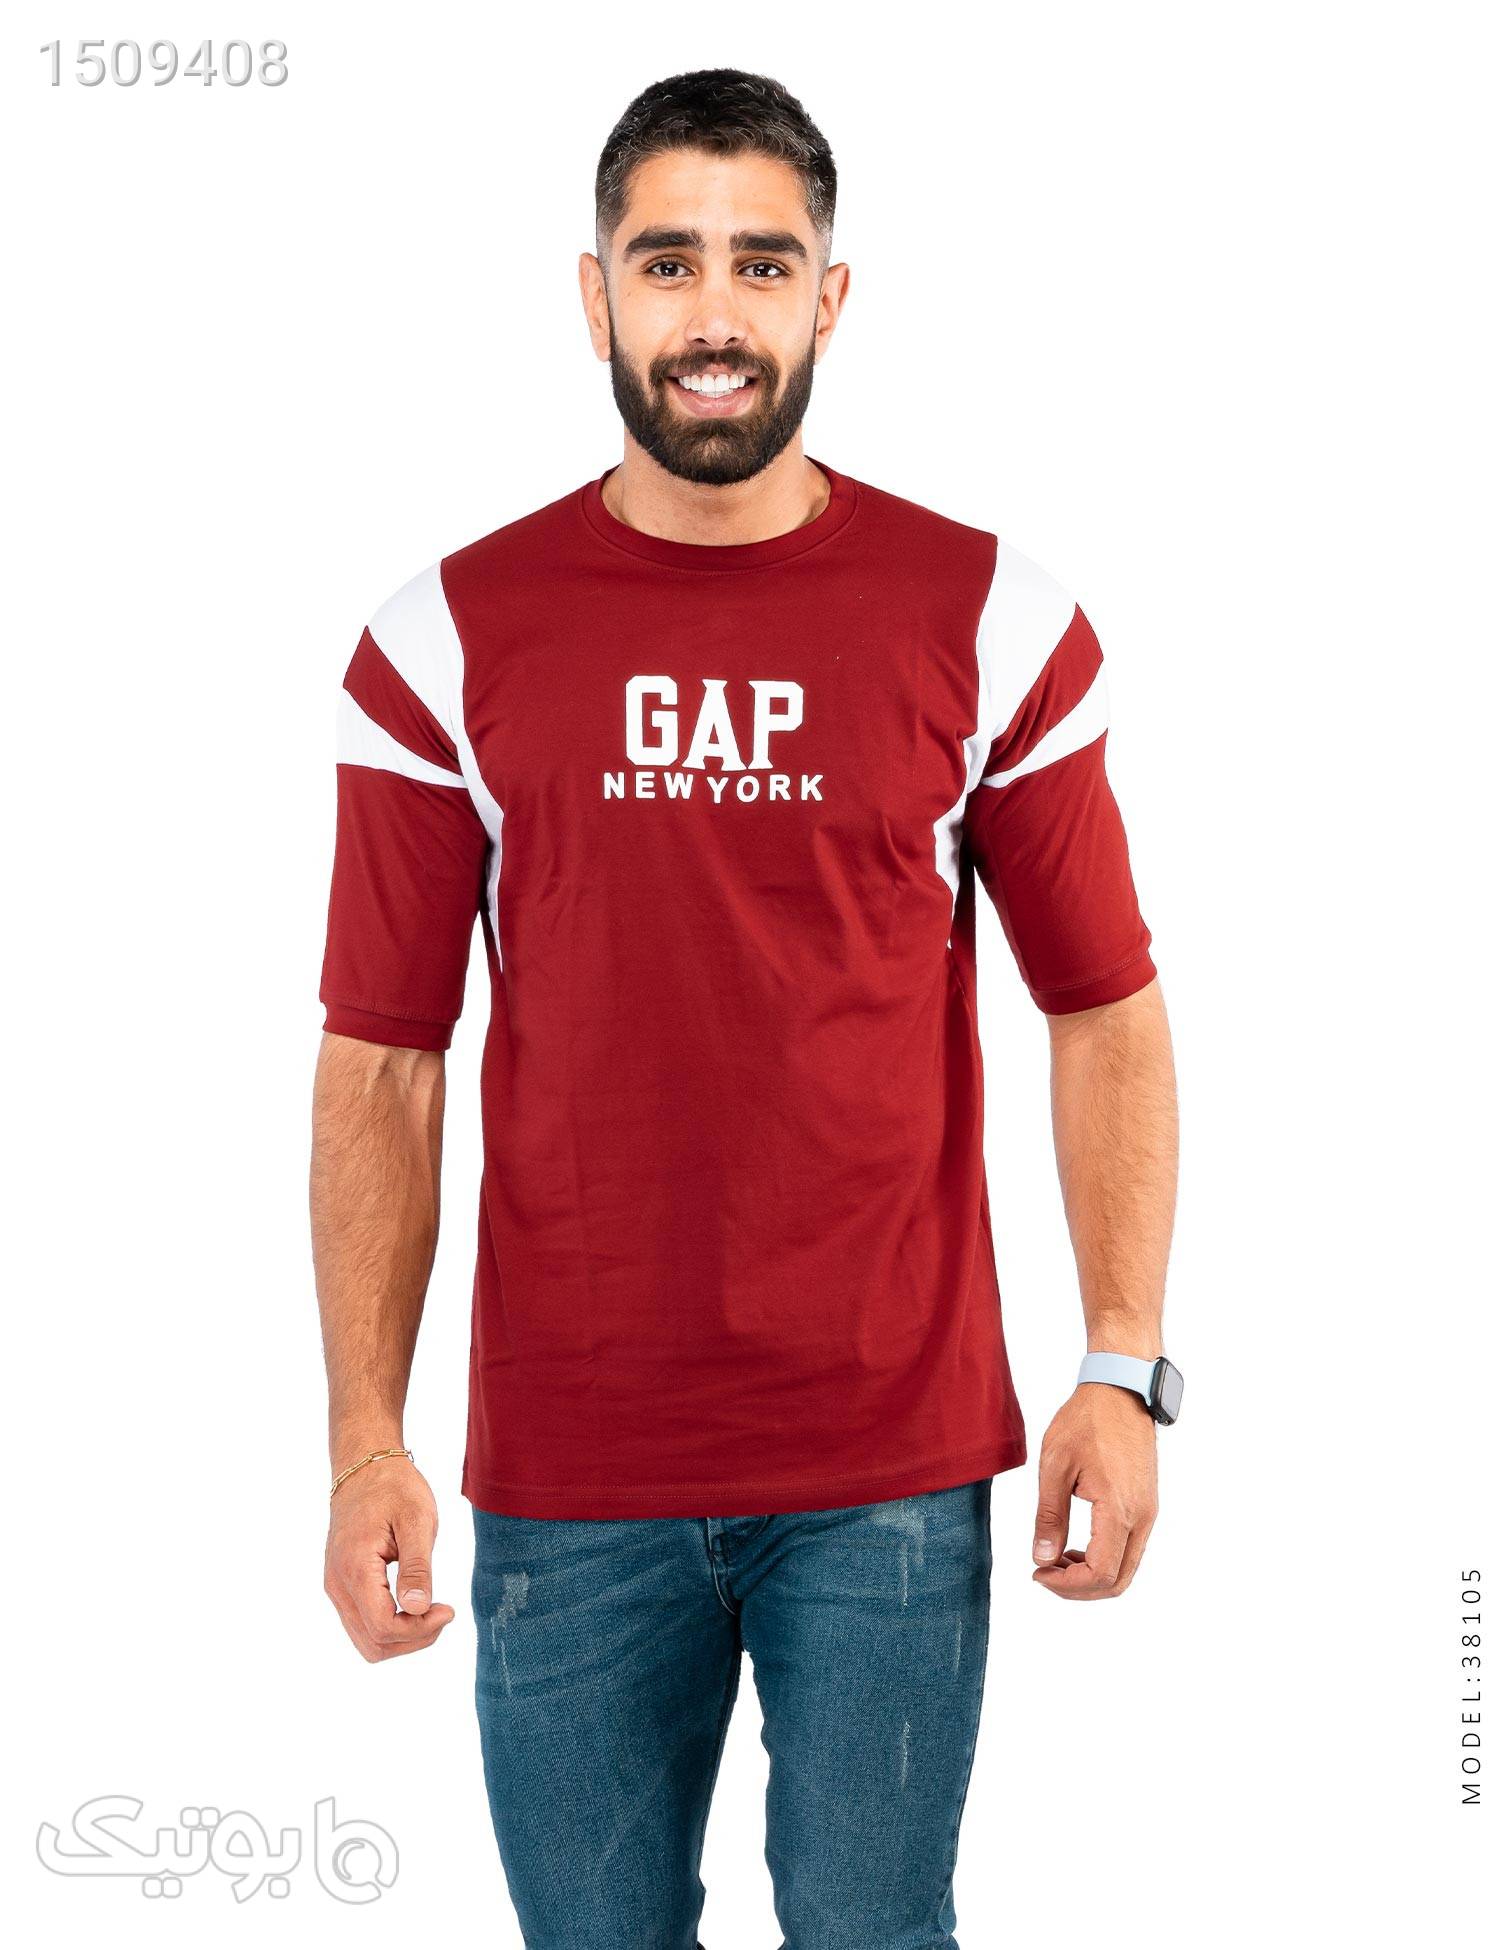 تیشرت مردانه دو رنگ یقه گرد Gap مدل 38105 زرشکی تی شرت و پولو شرت مردانه